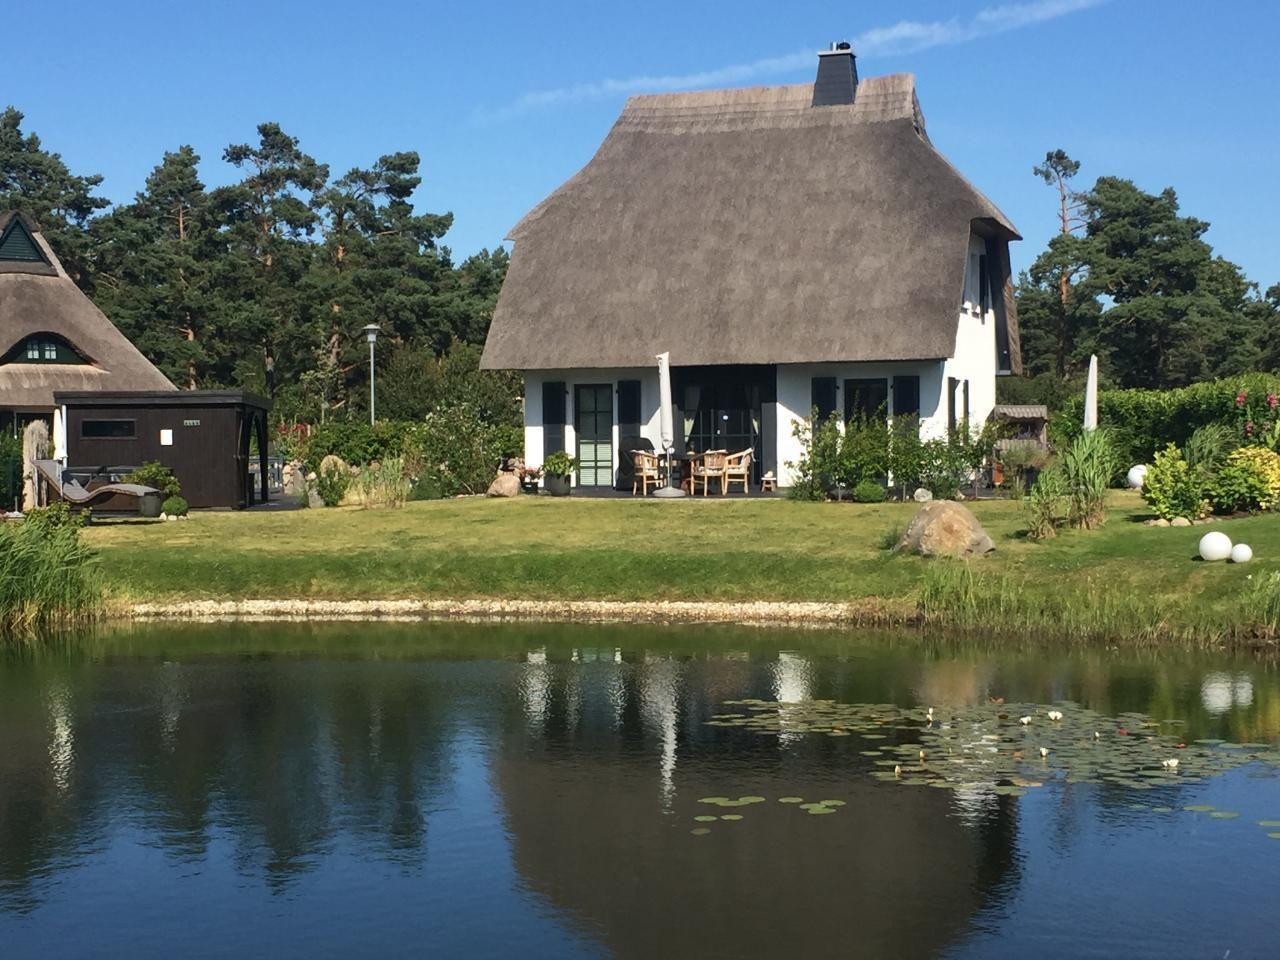 5 Sterne Reetdachhaus in Sonnenlage am Wasser mit    Mecklenburger Ostseeküste